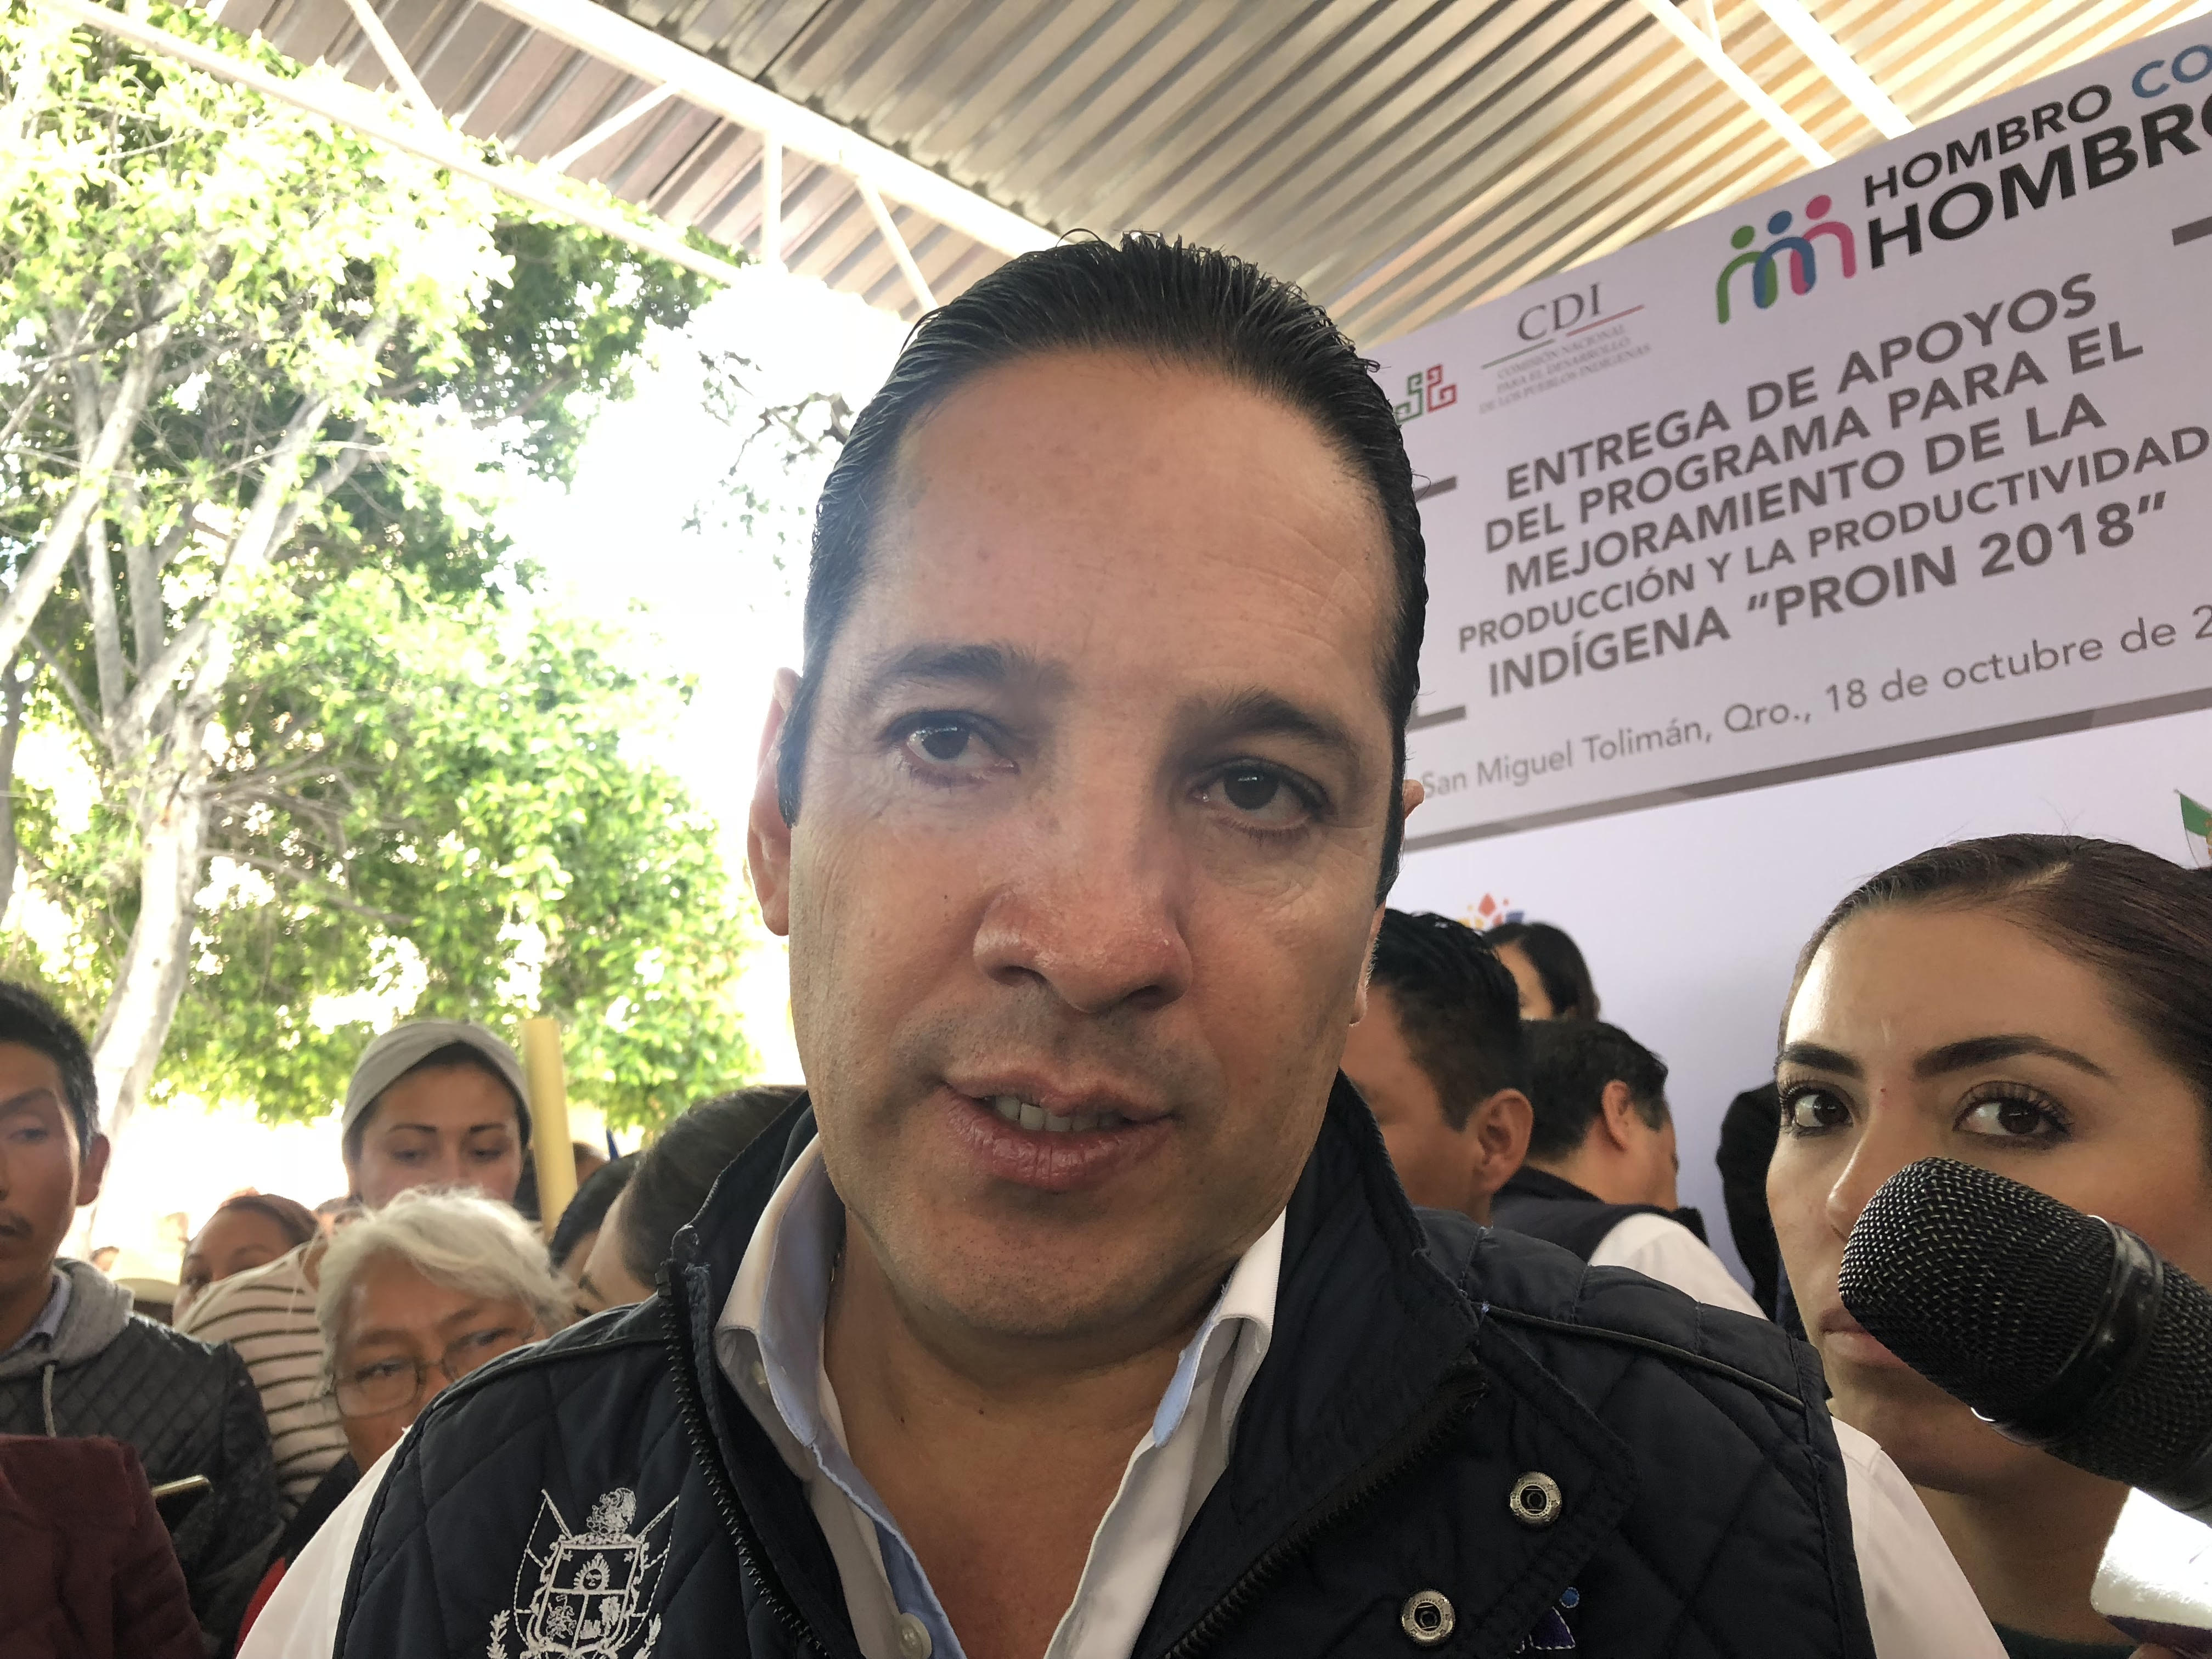  Pancho Domínguez planea reuniones con alcaldes para apuntalar percepción de seguridad